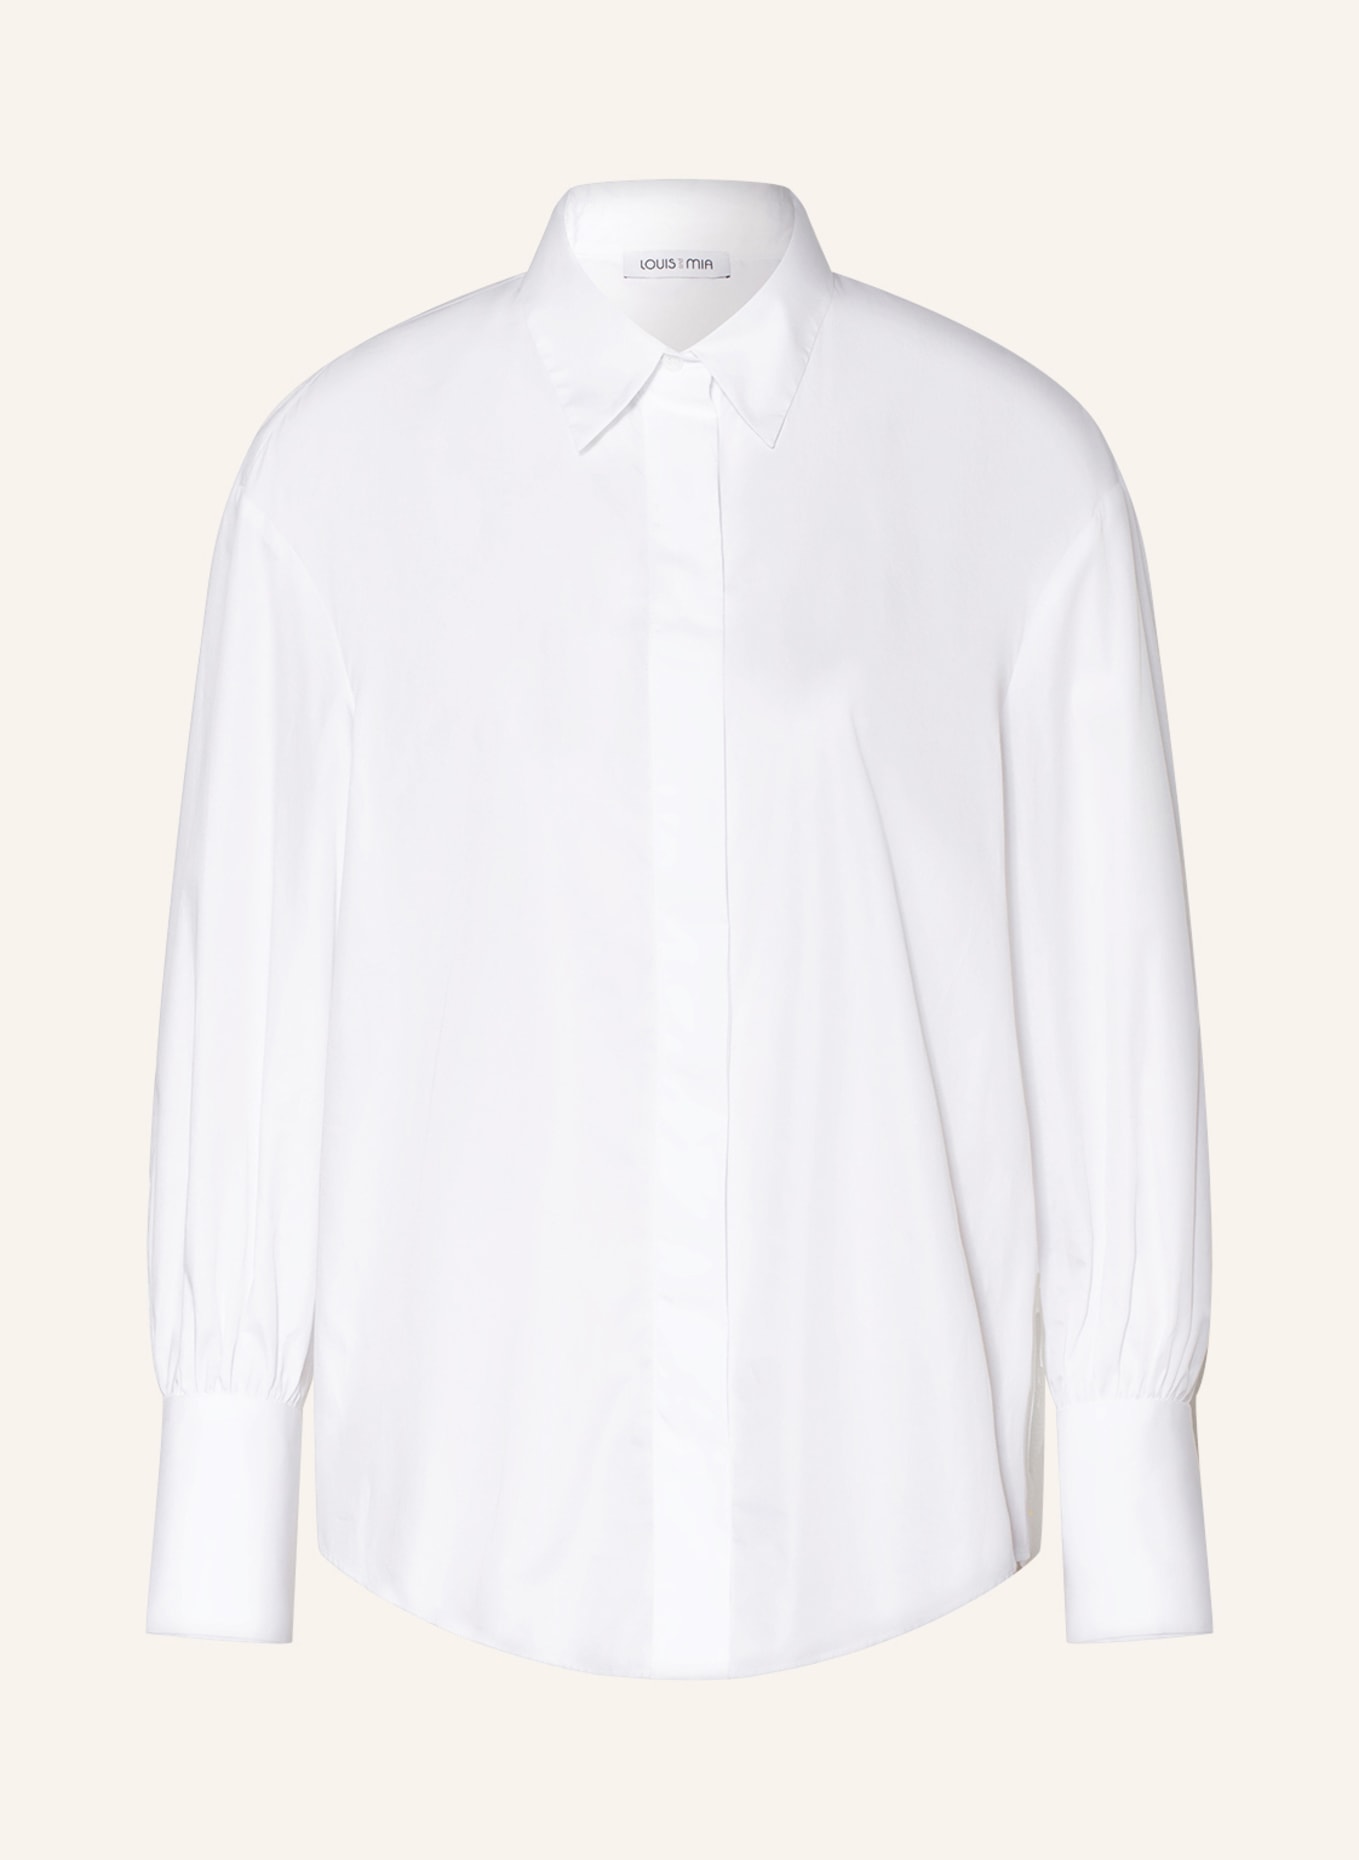 Louis Vuitton Uniform Blouse Size 32 New  Etsy